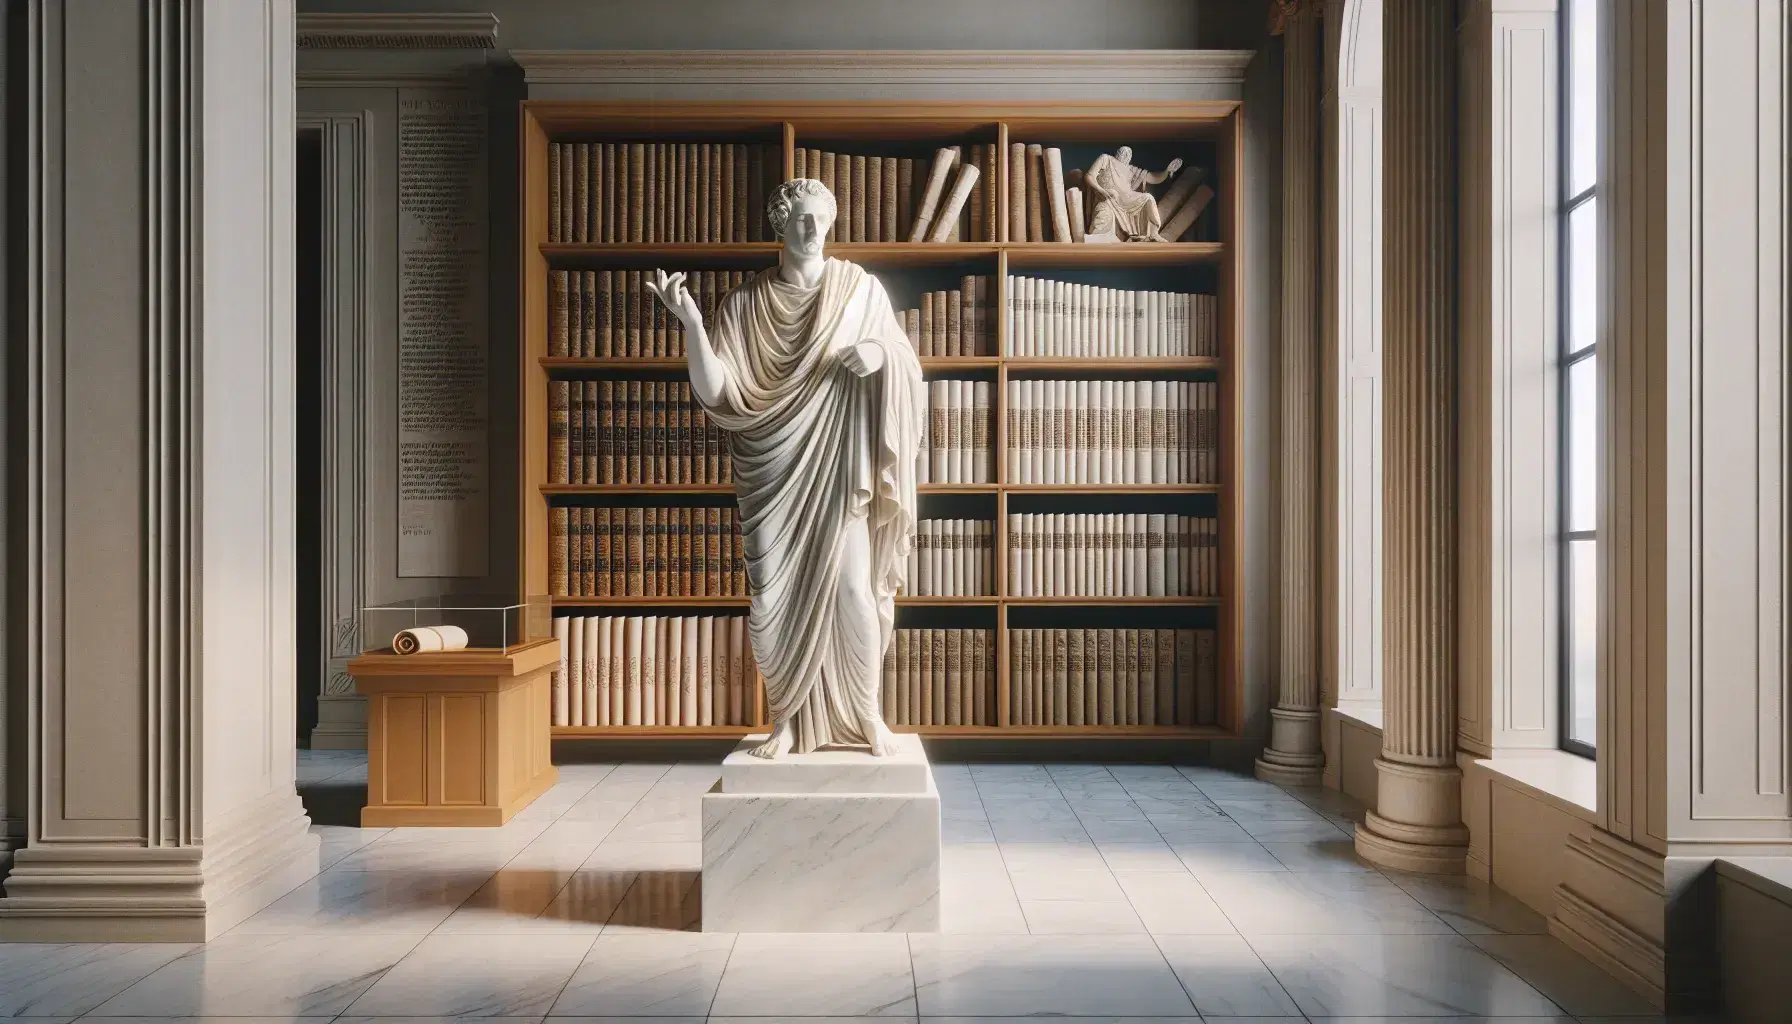 Estatua de mármol blanco de autor clásico en biblioteca antigua, con túnica tallada y mano extendida, rodeada de pergaminos y libros bajo luz natural.